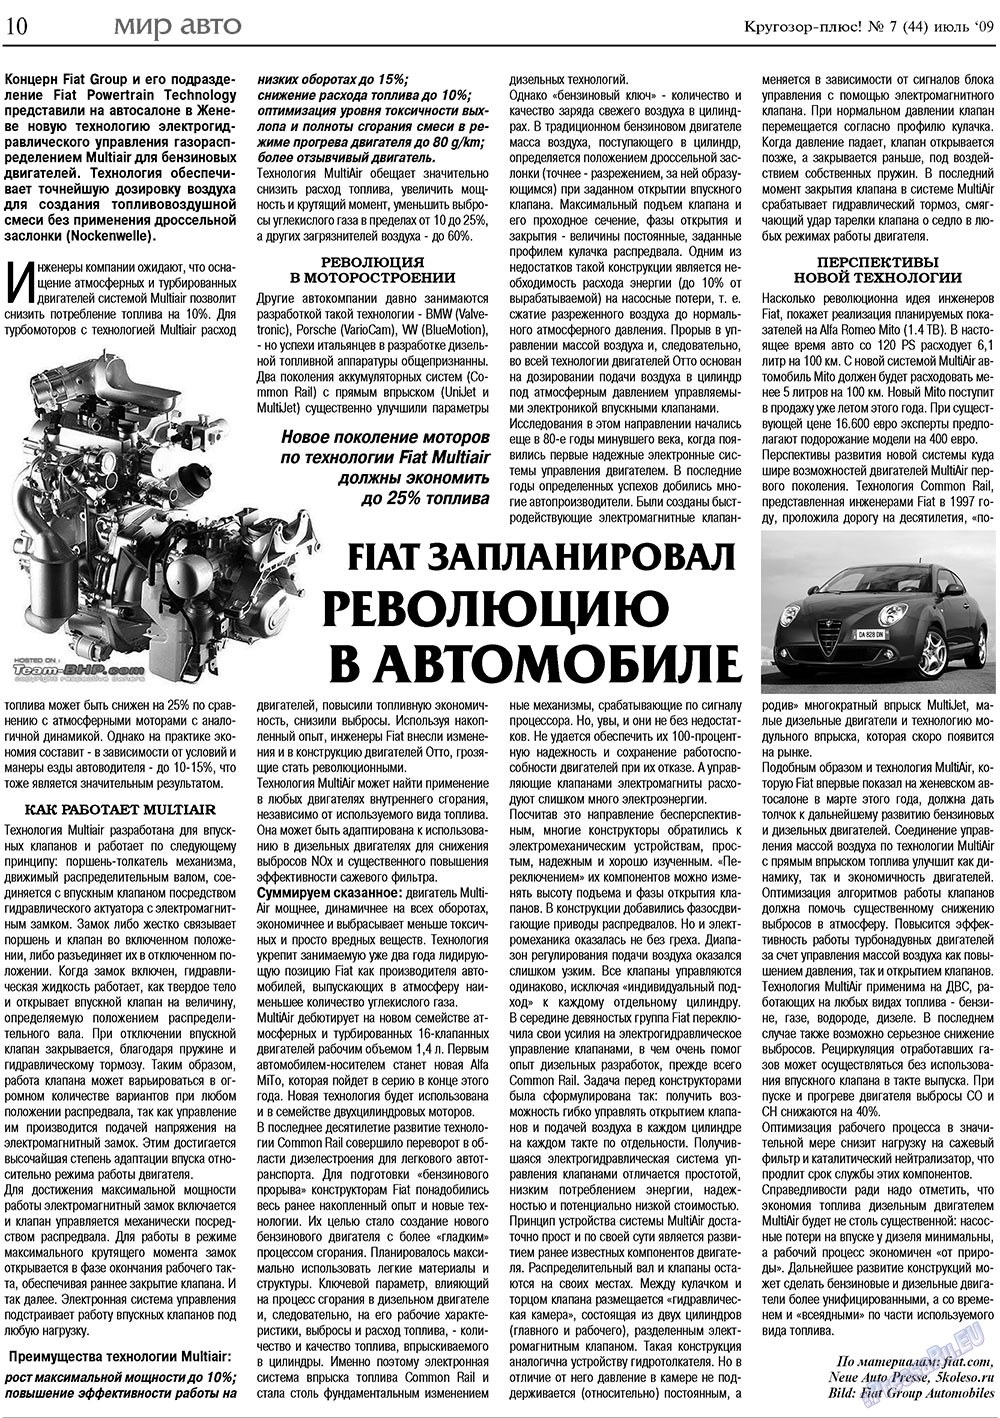 Кругозор плюс!, газета. 2009 №7 стр.10